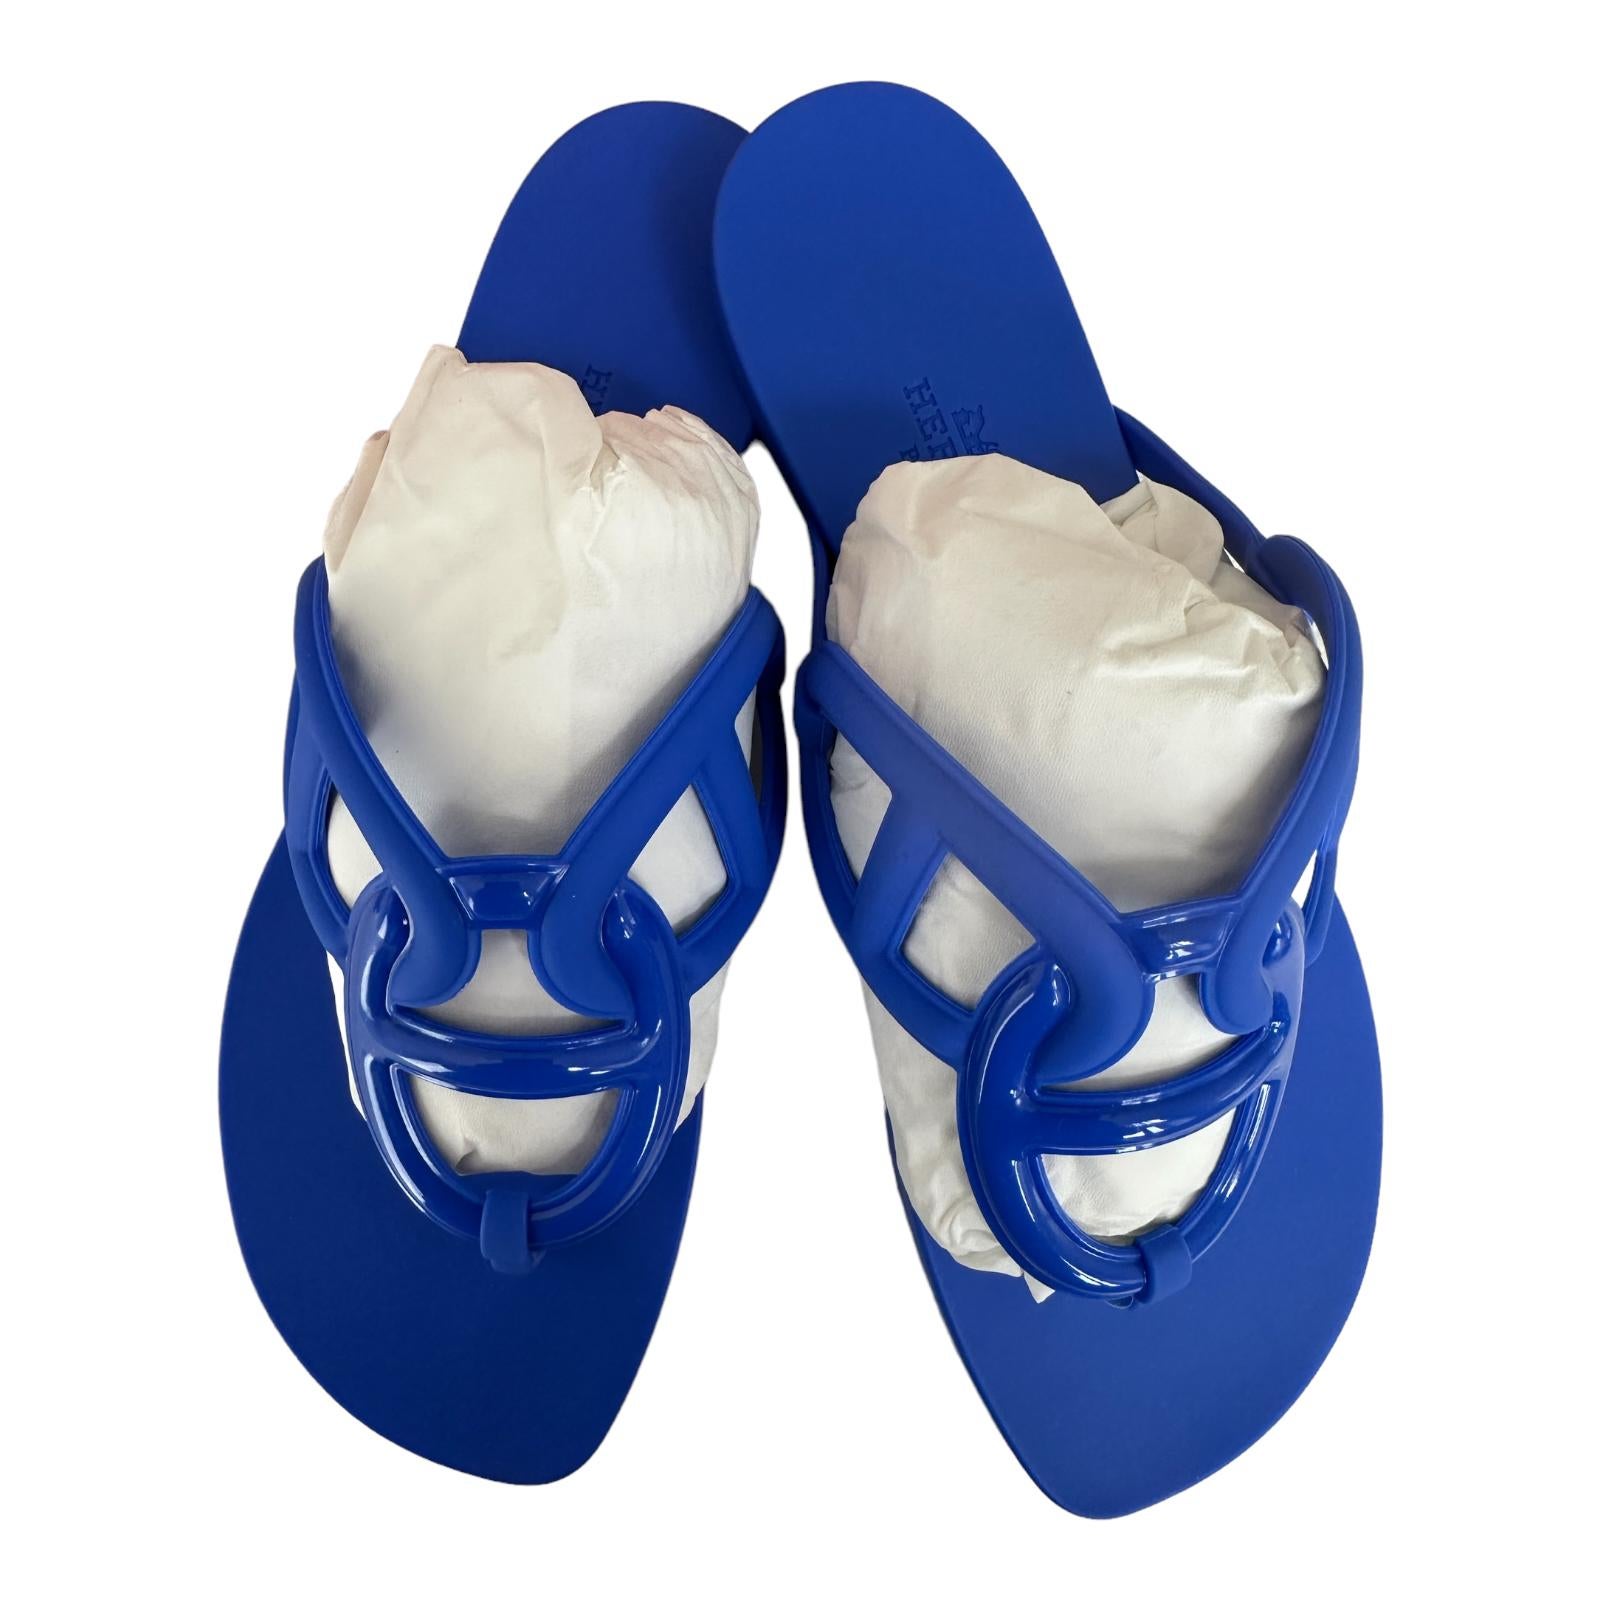 La sandale EgerieLa sandale Egerie
Chaine d'Ancre Motif
Bleu Outremer
Le prix de détail est de 325 $.
Un beau bleu vif
Sandale H en toile avec découpe emblématique du 